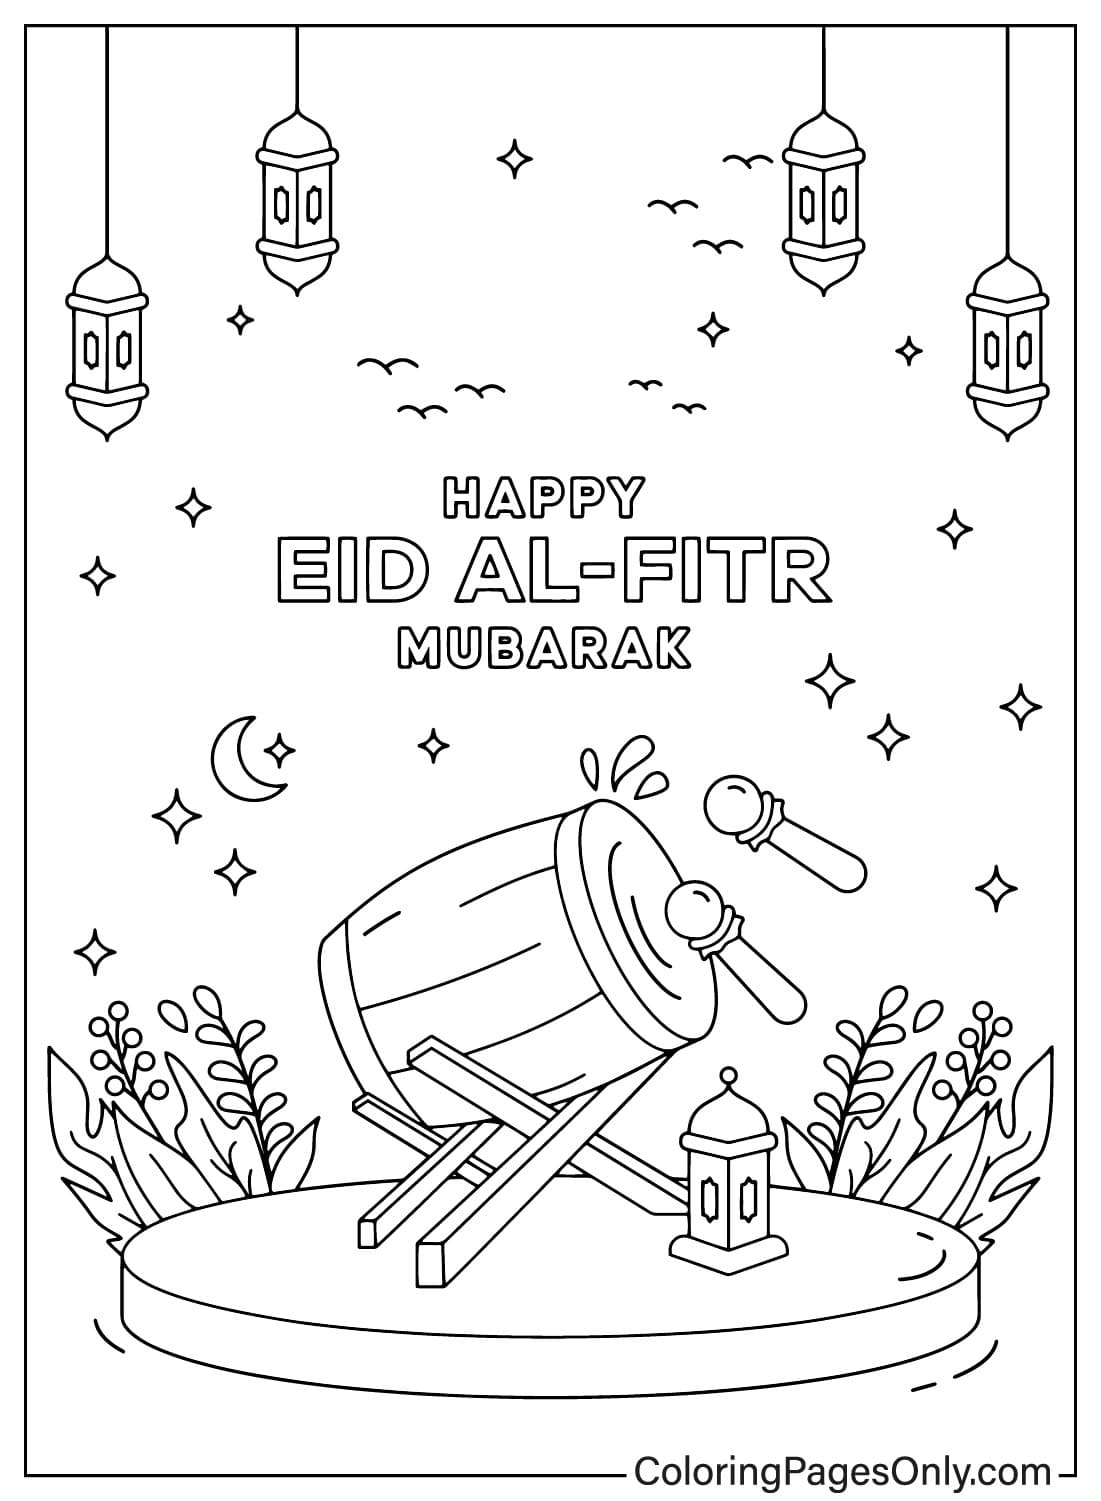 Bilder Eid Al-Fitr Malvorlagen von Eid Al-Fitr